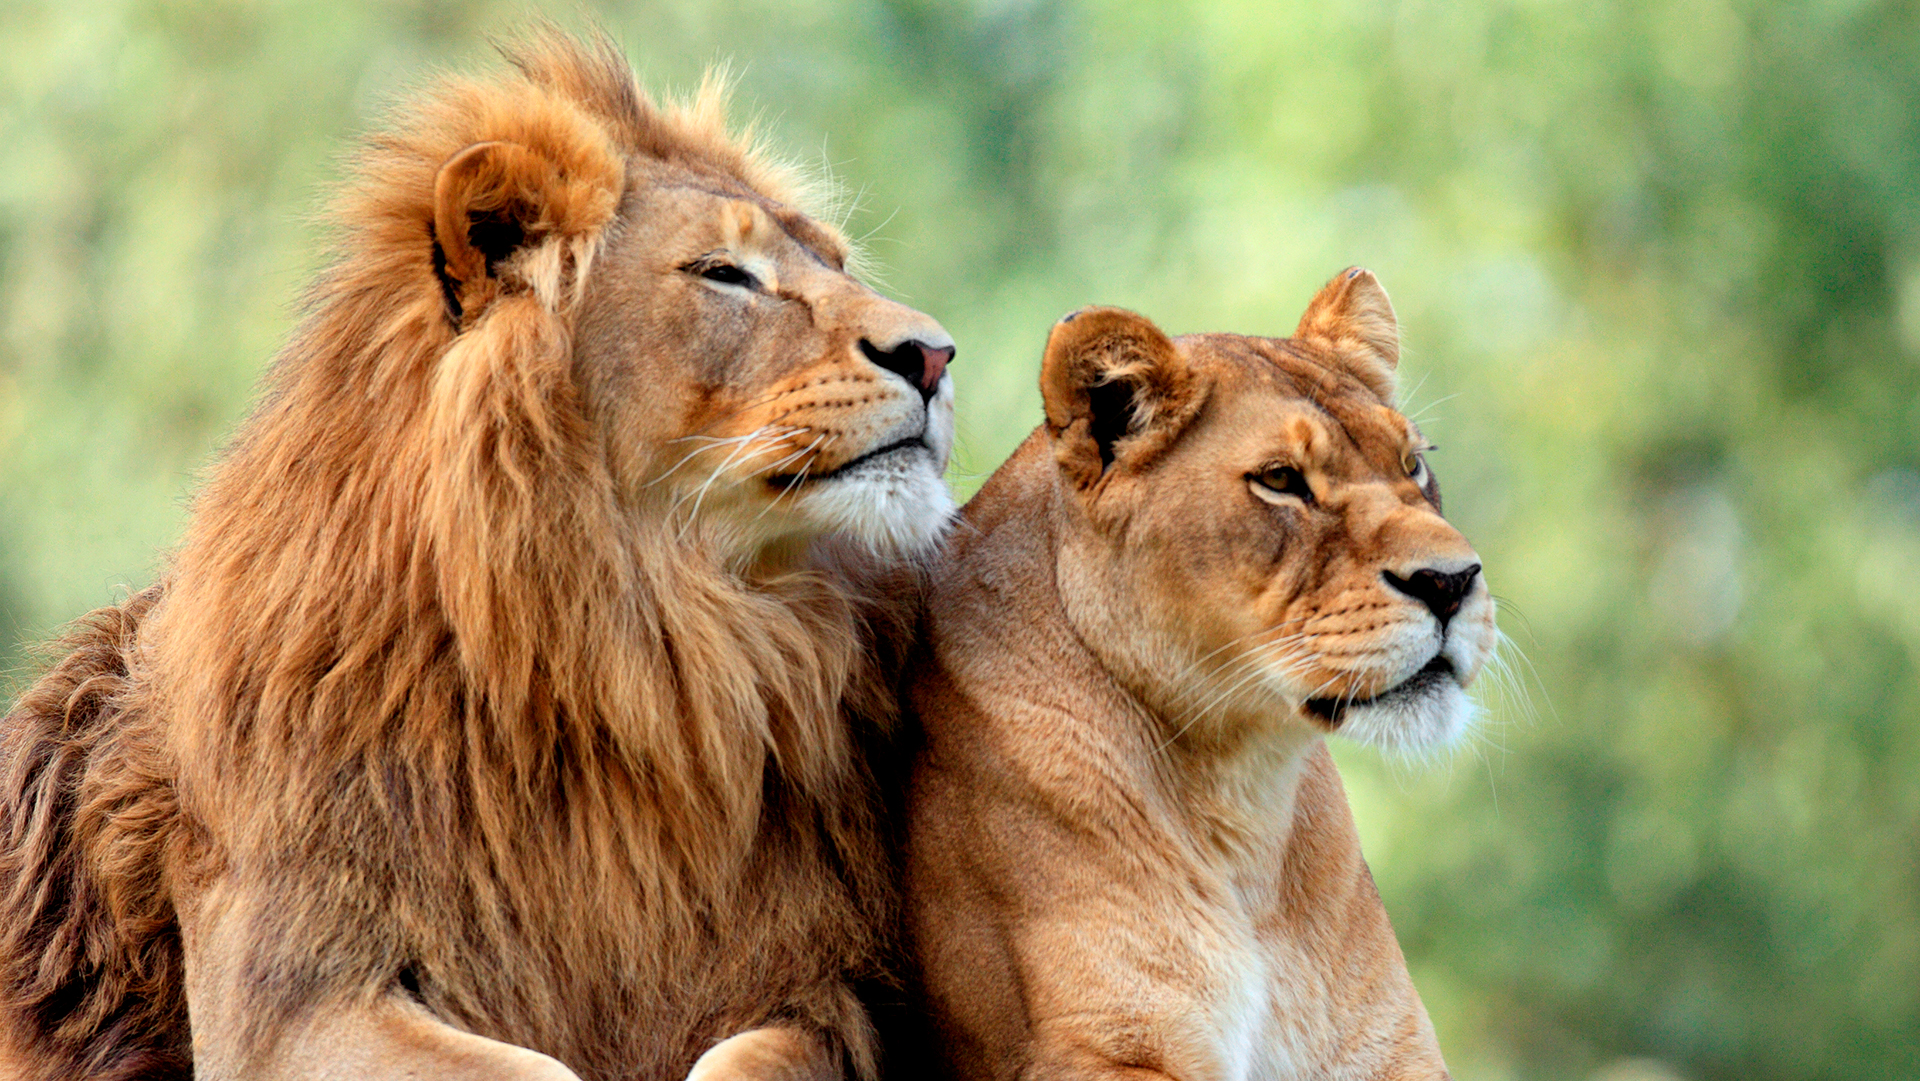 Debido a su alta cohesión social y actividad grupal sincronizada, los leones son un modelo para investigar tanto los bostezos espontáneos desde el dominio fisiológico como, posiblemente, los bostezos contagiosos, desde el dominio comunicativo social (Shutterstock)